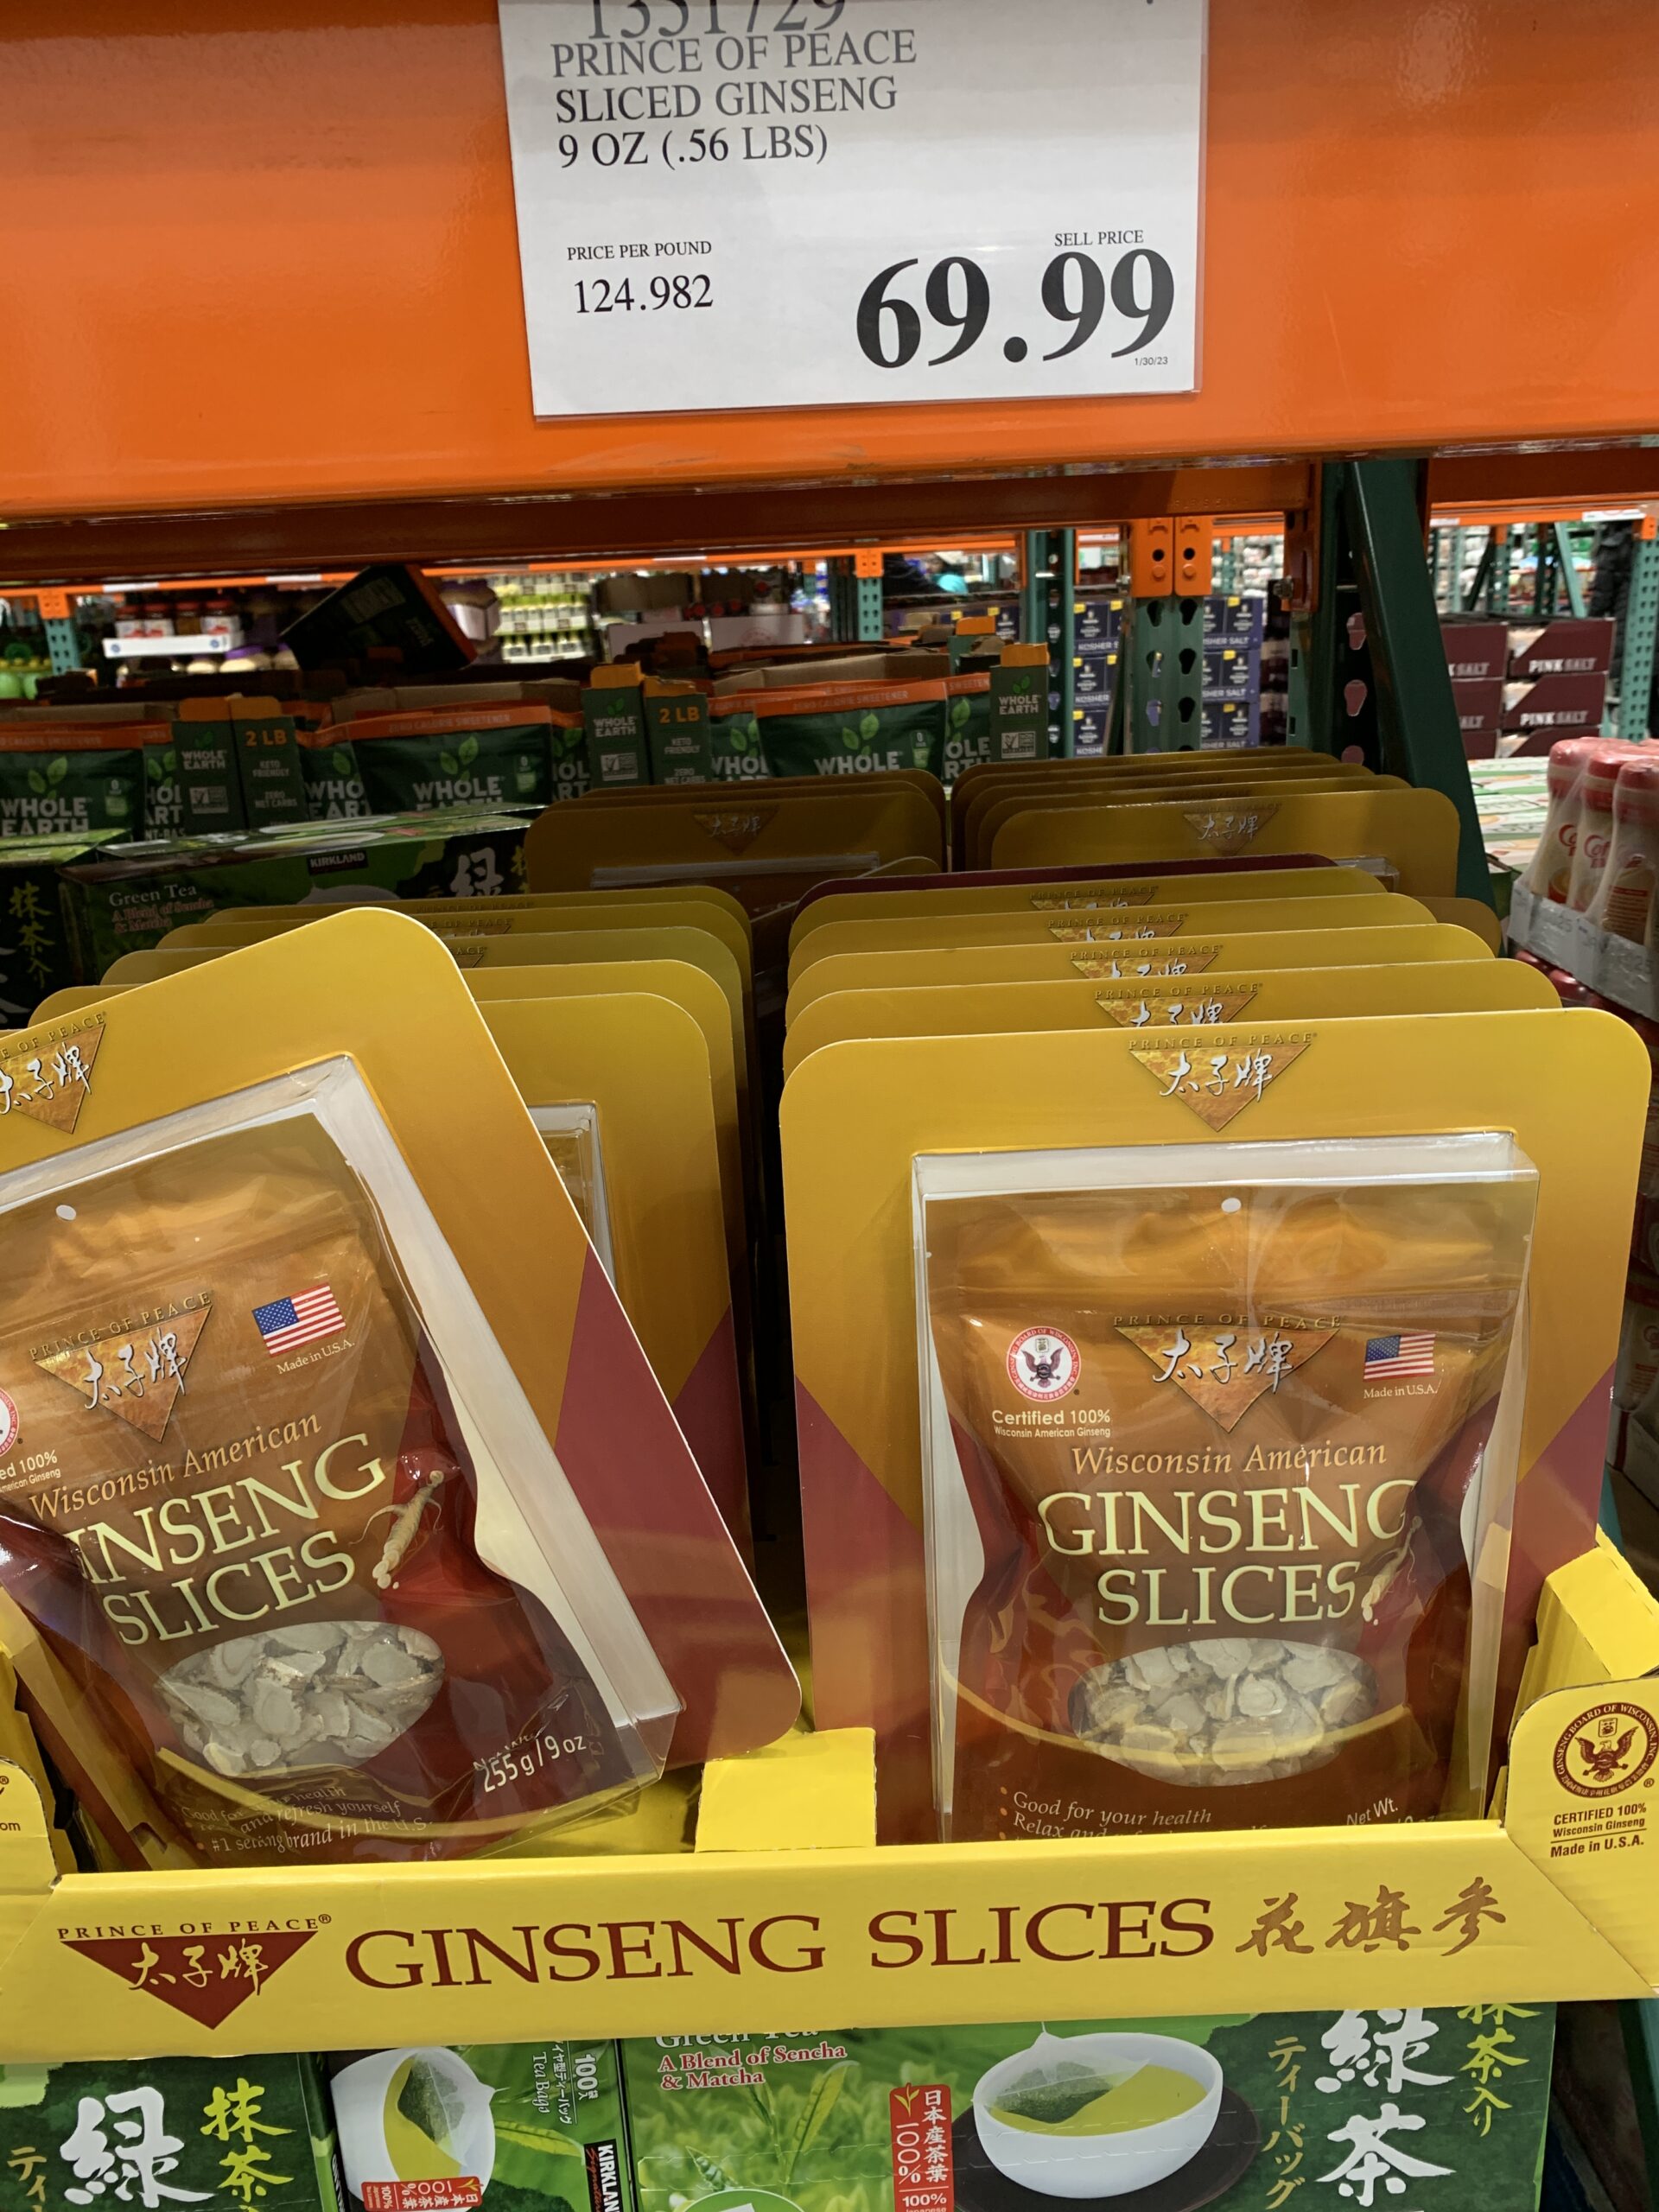 Sliced Ginseng 9oz $69.99 at Costco